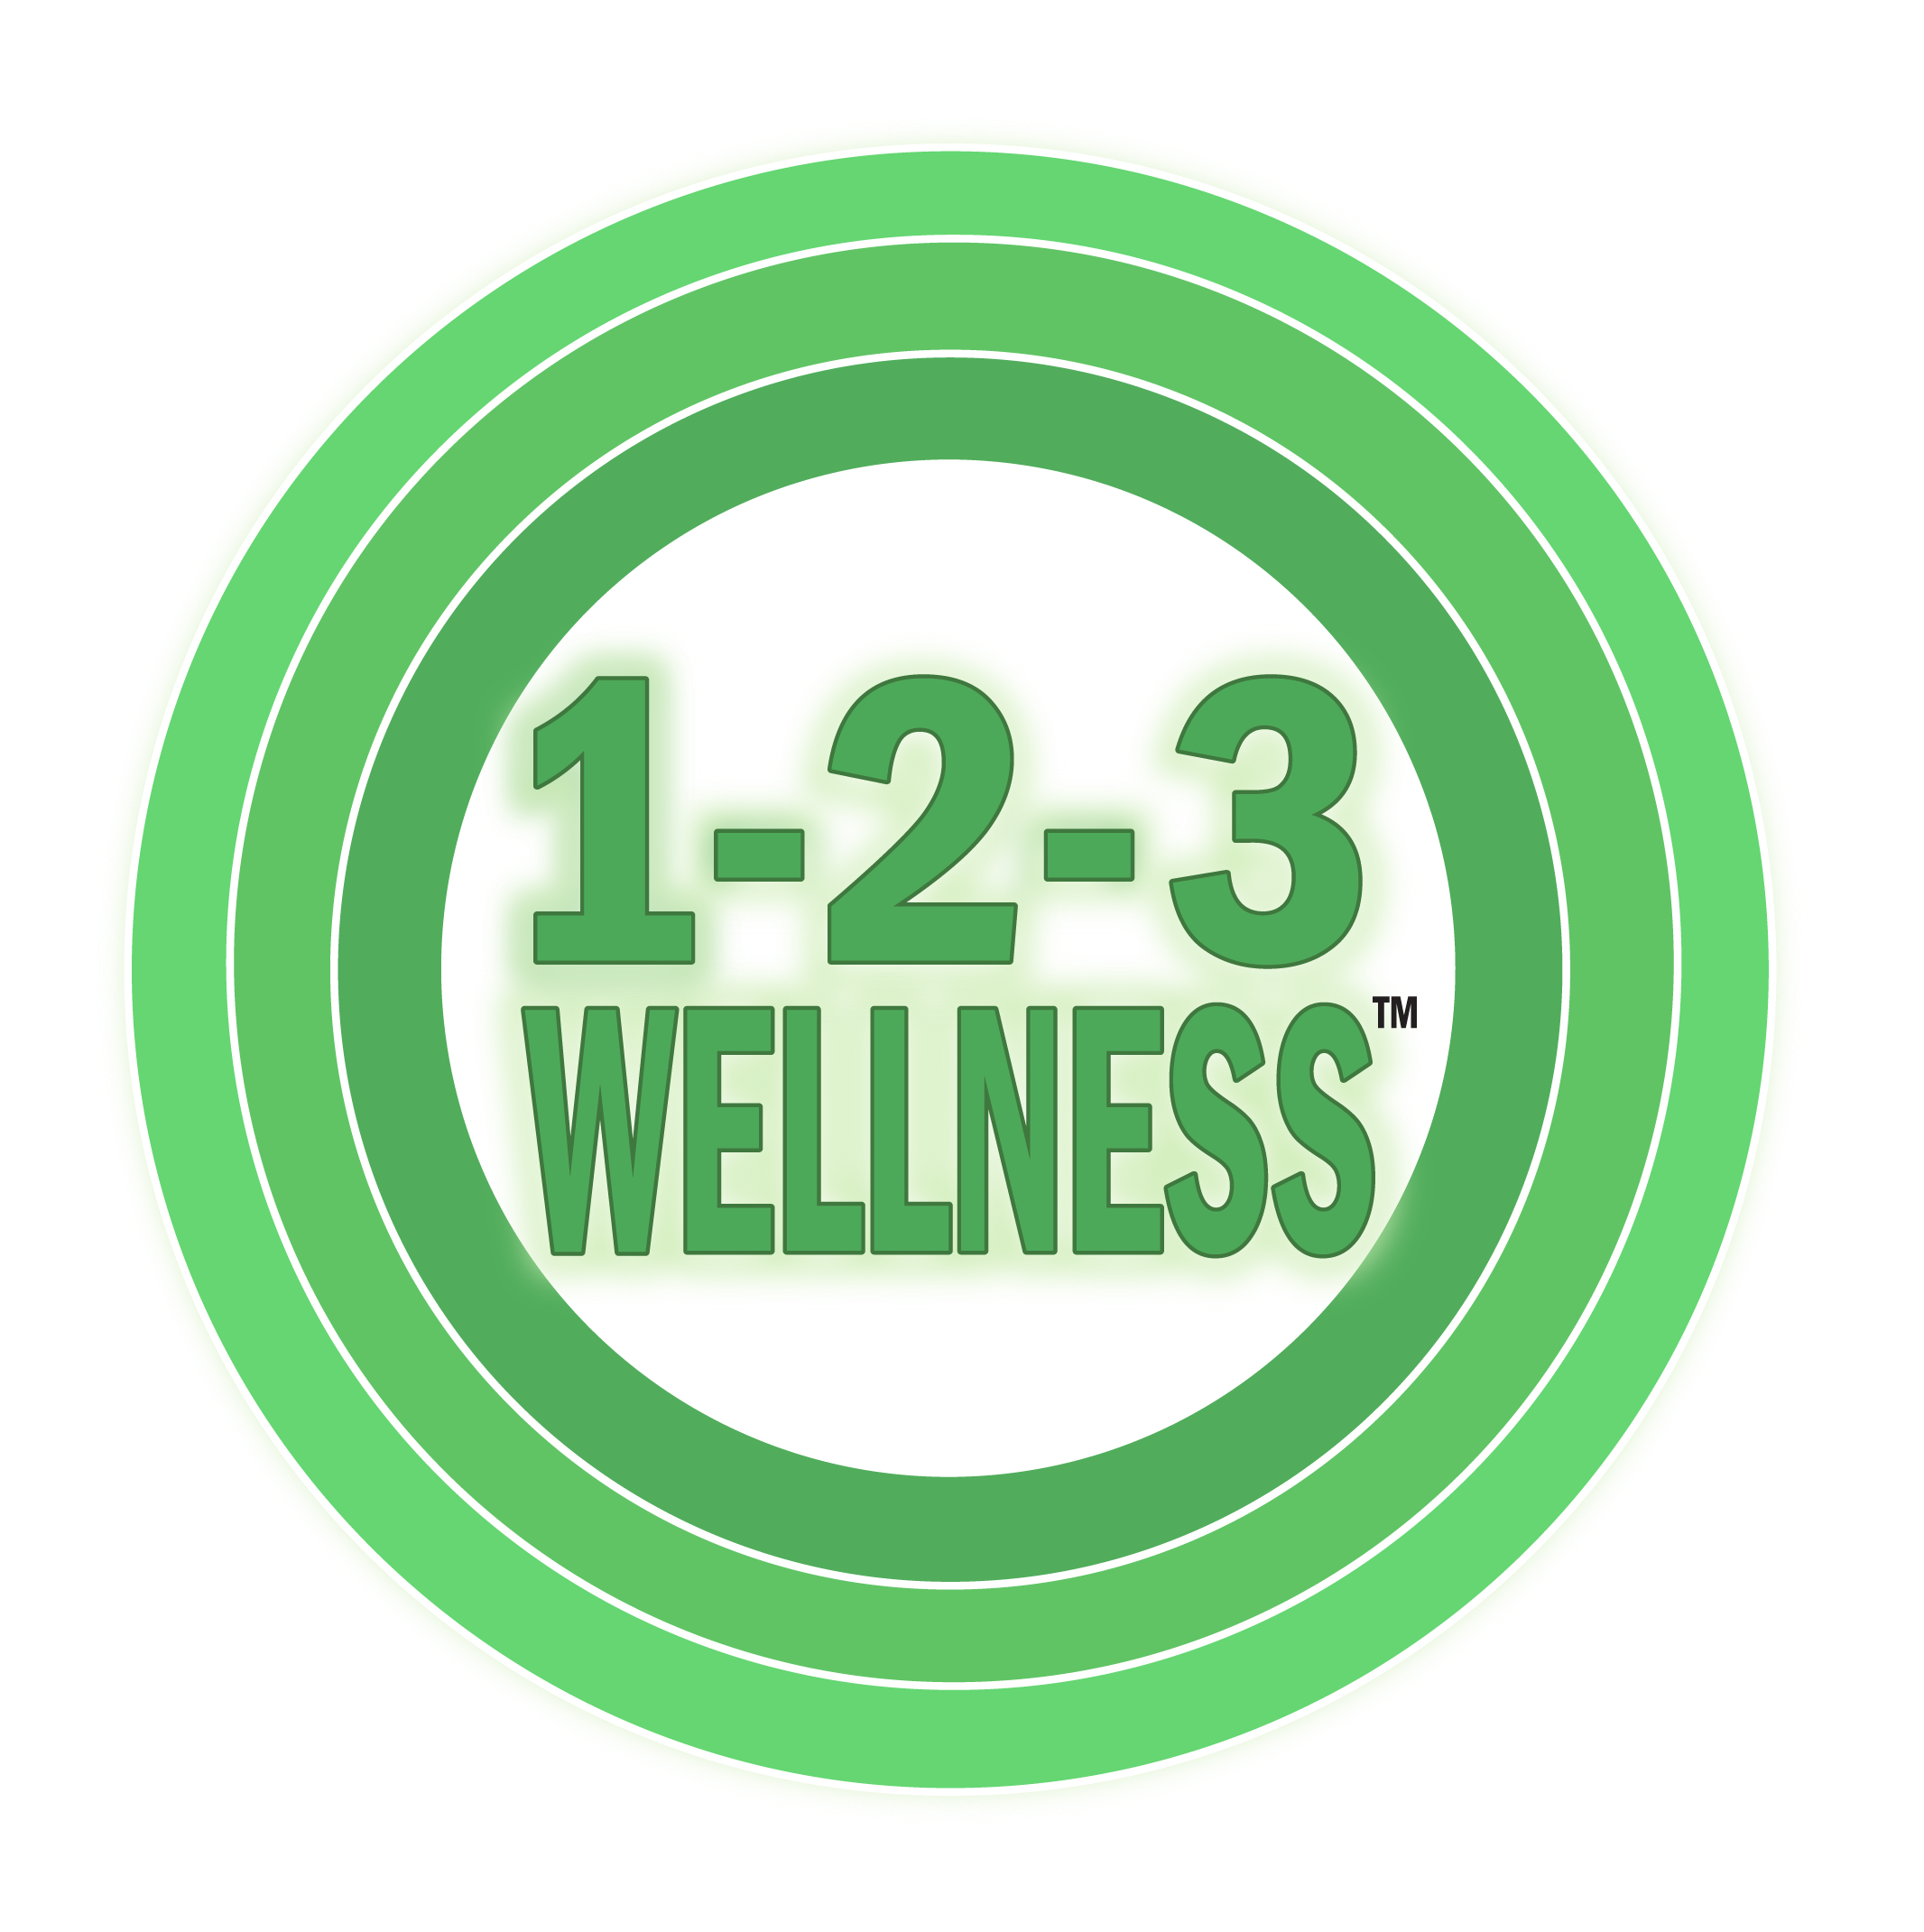 1-2-3 Wellness